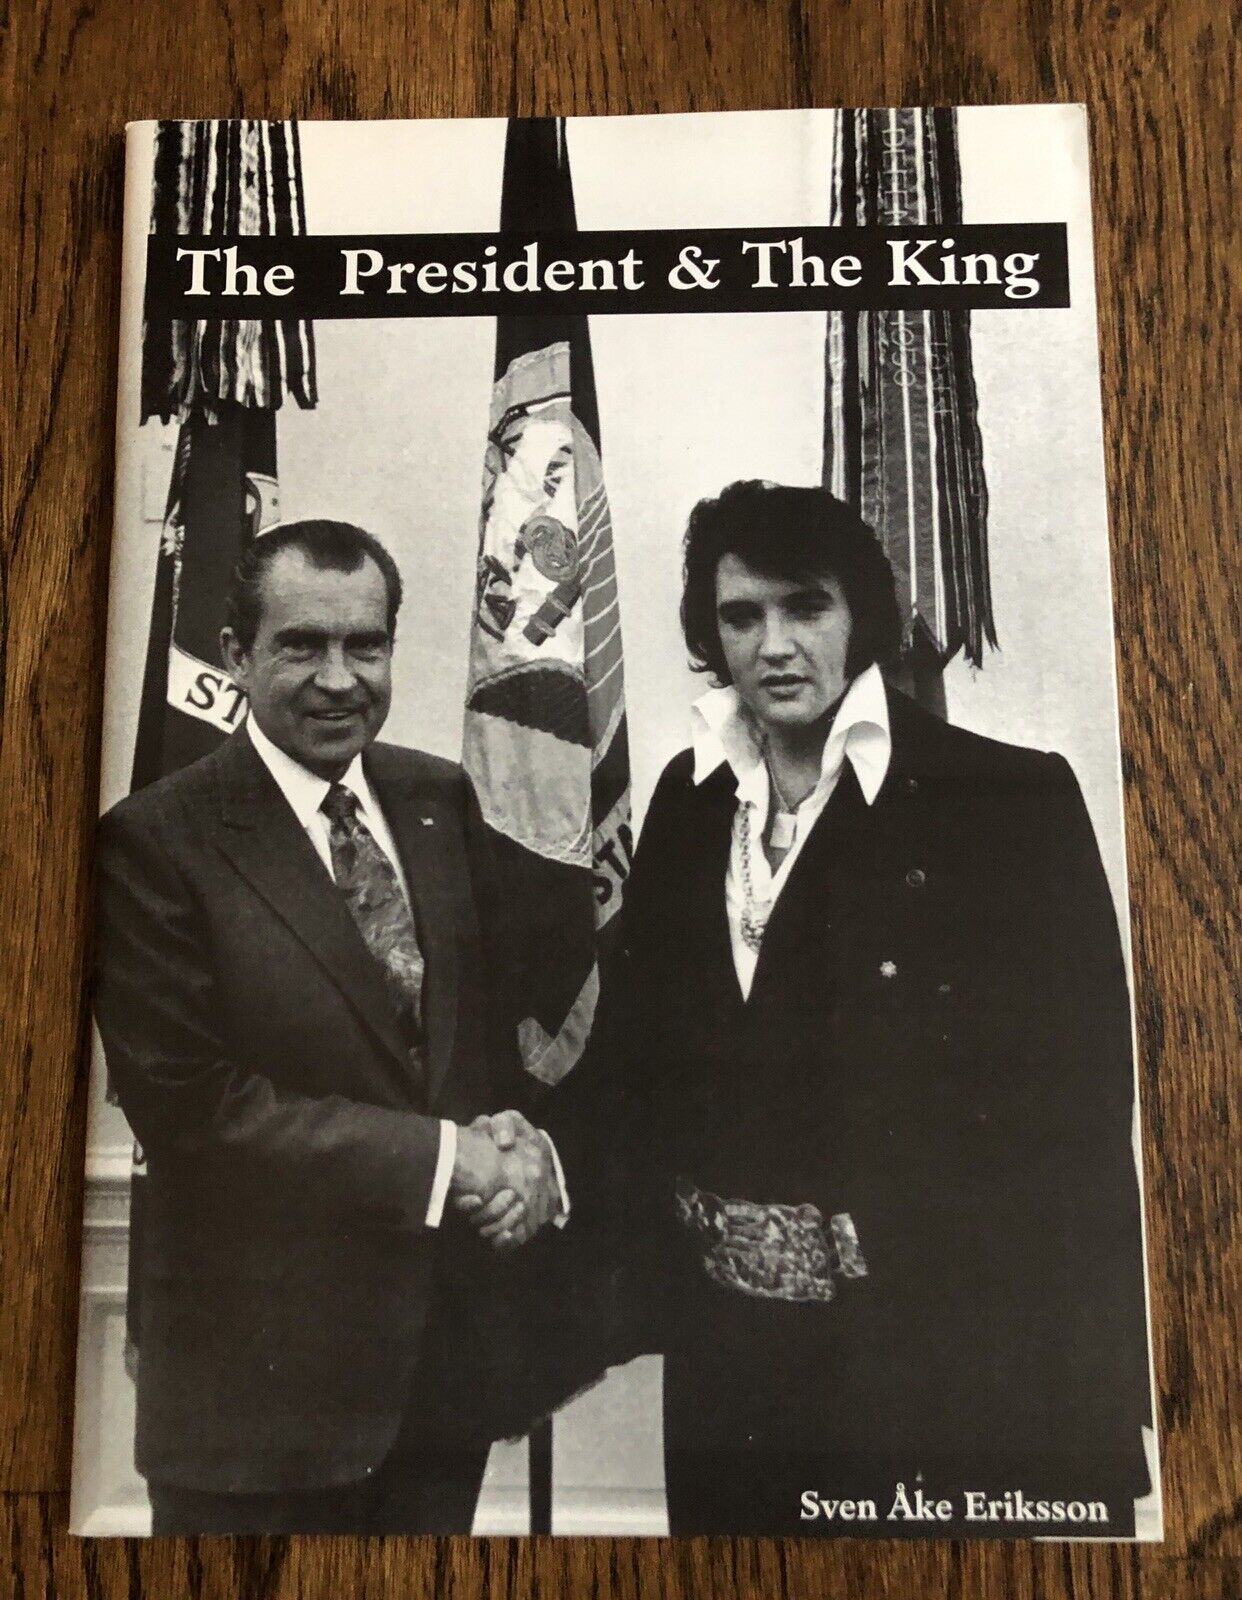 Elvis The President & The King Book & Calendar By Sven Ake Erikkson, Mint-